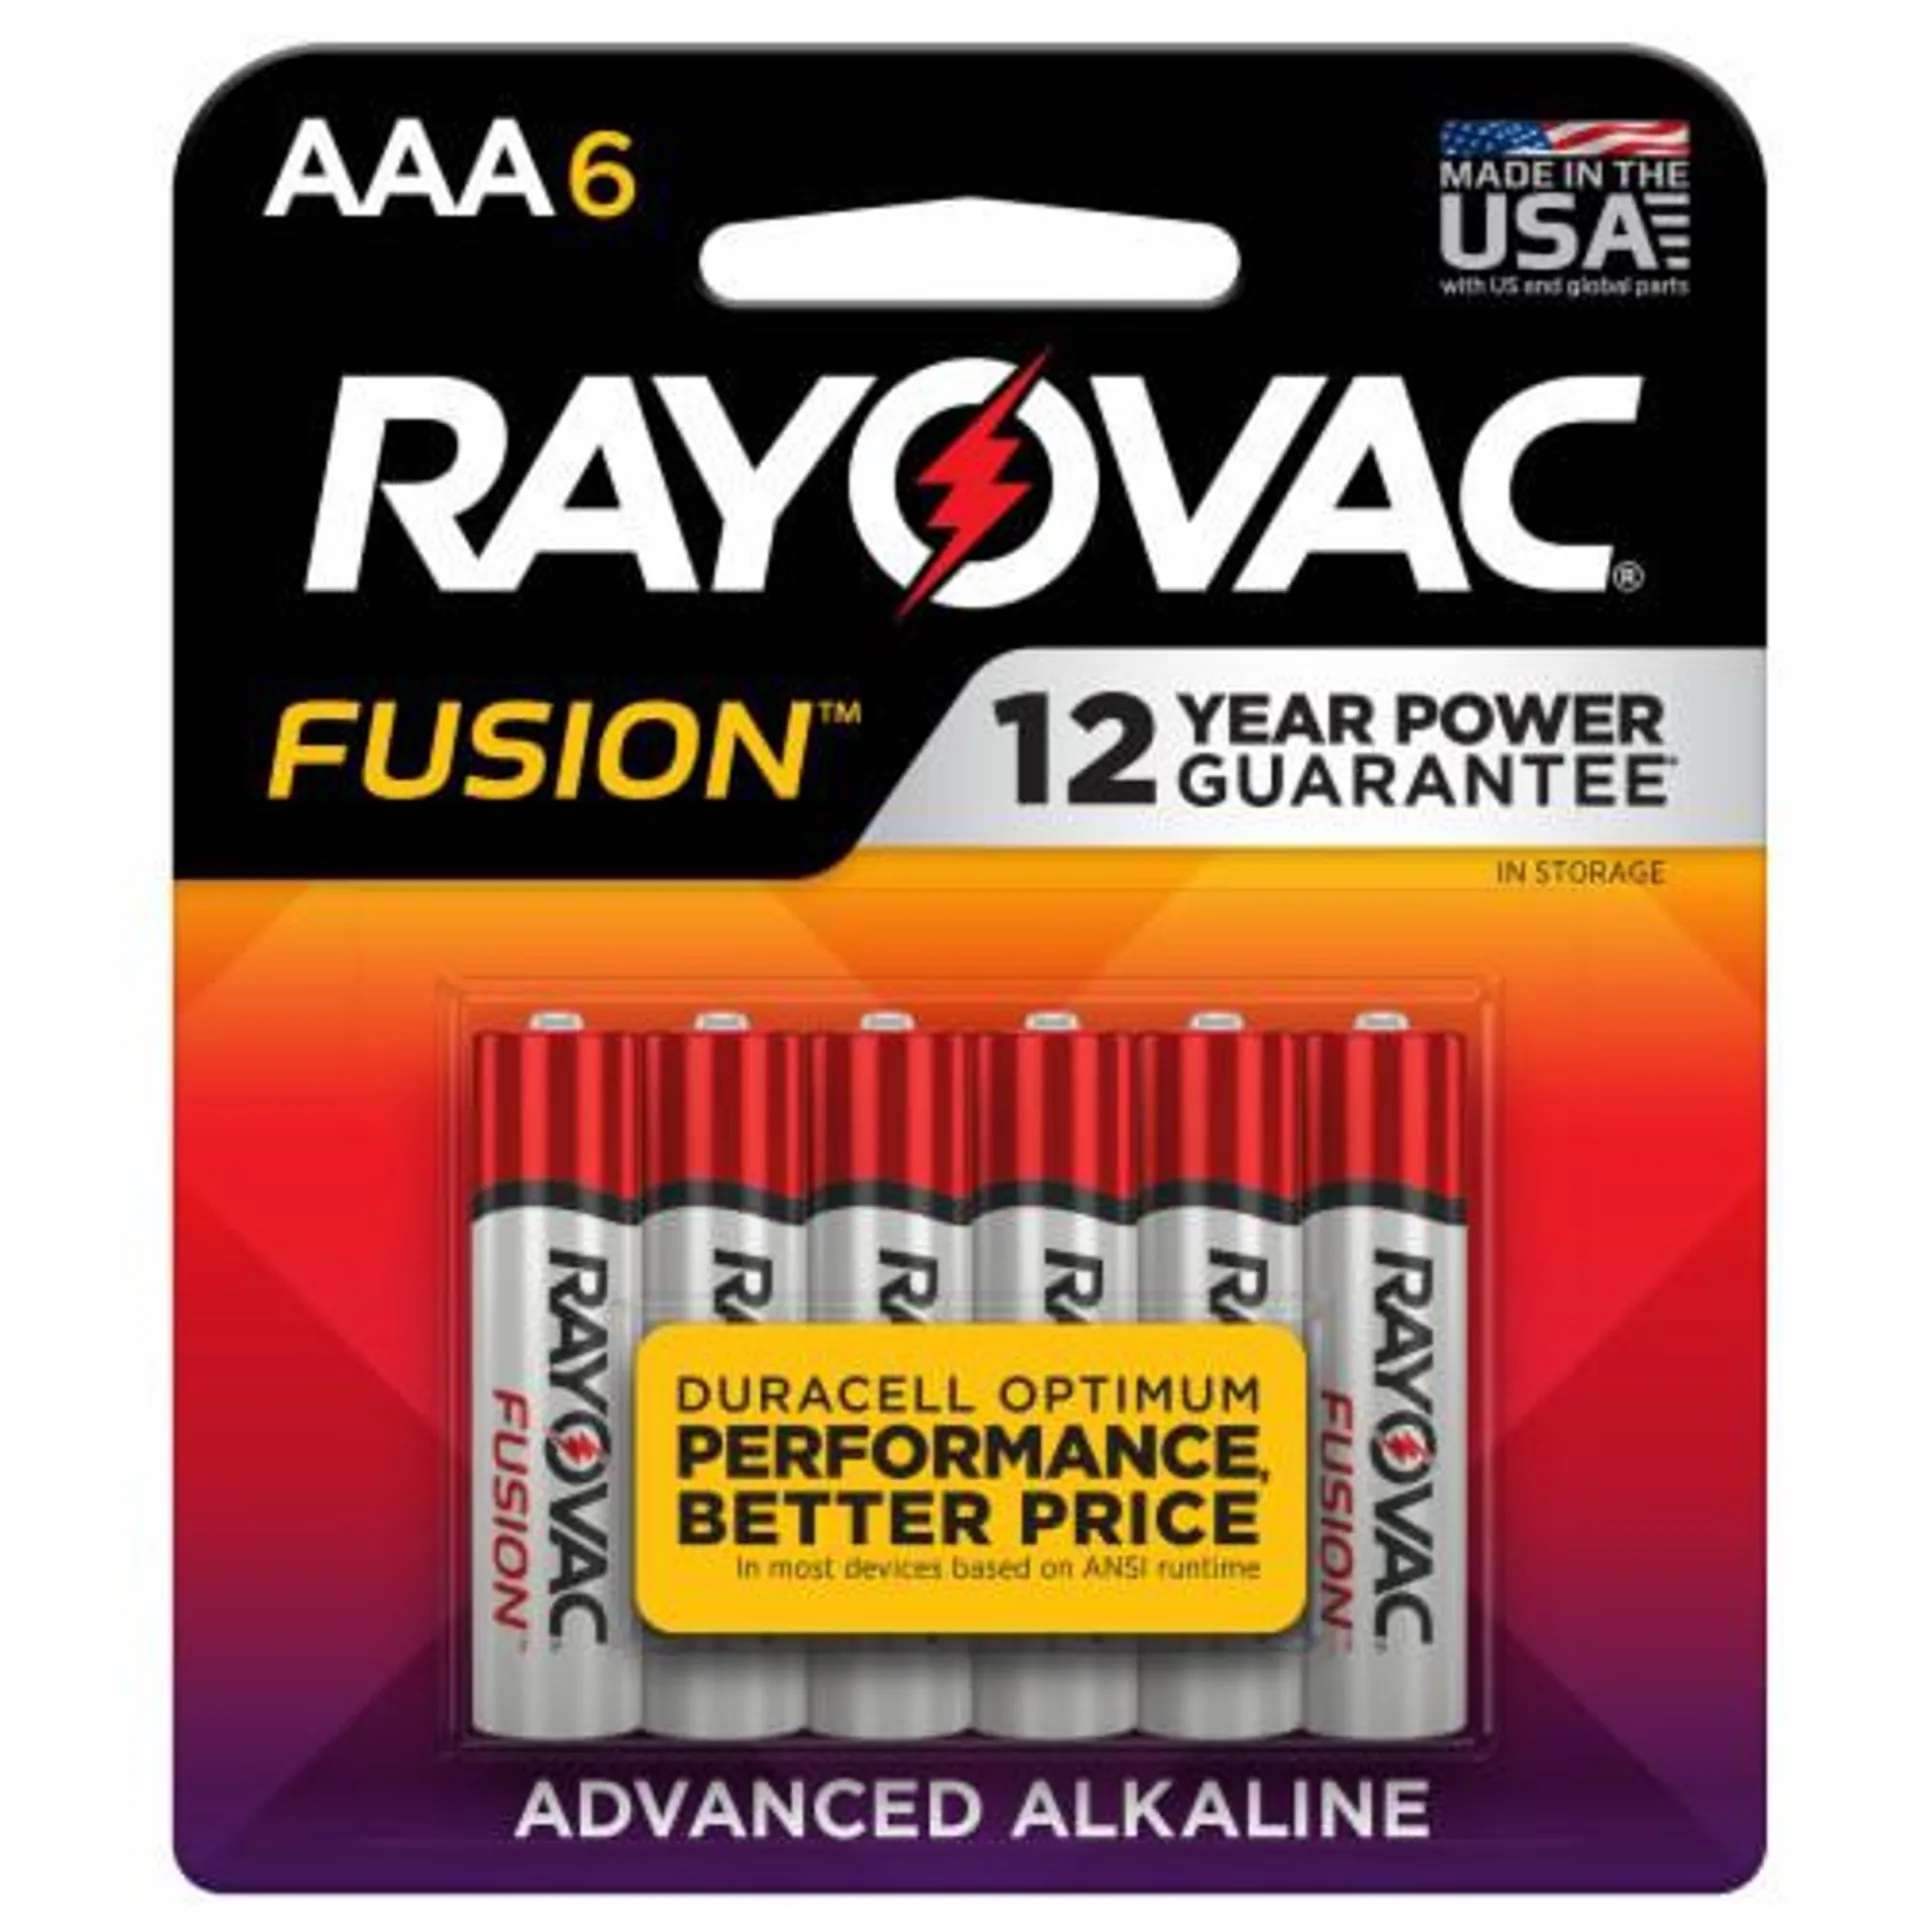 Rayovac® Fusion™ AAA Alkaline Batteries